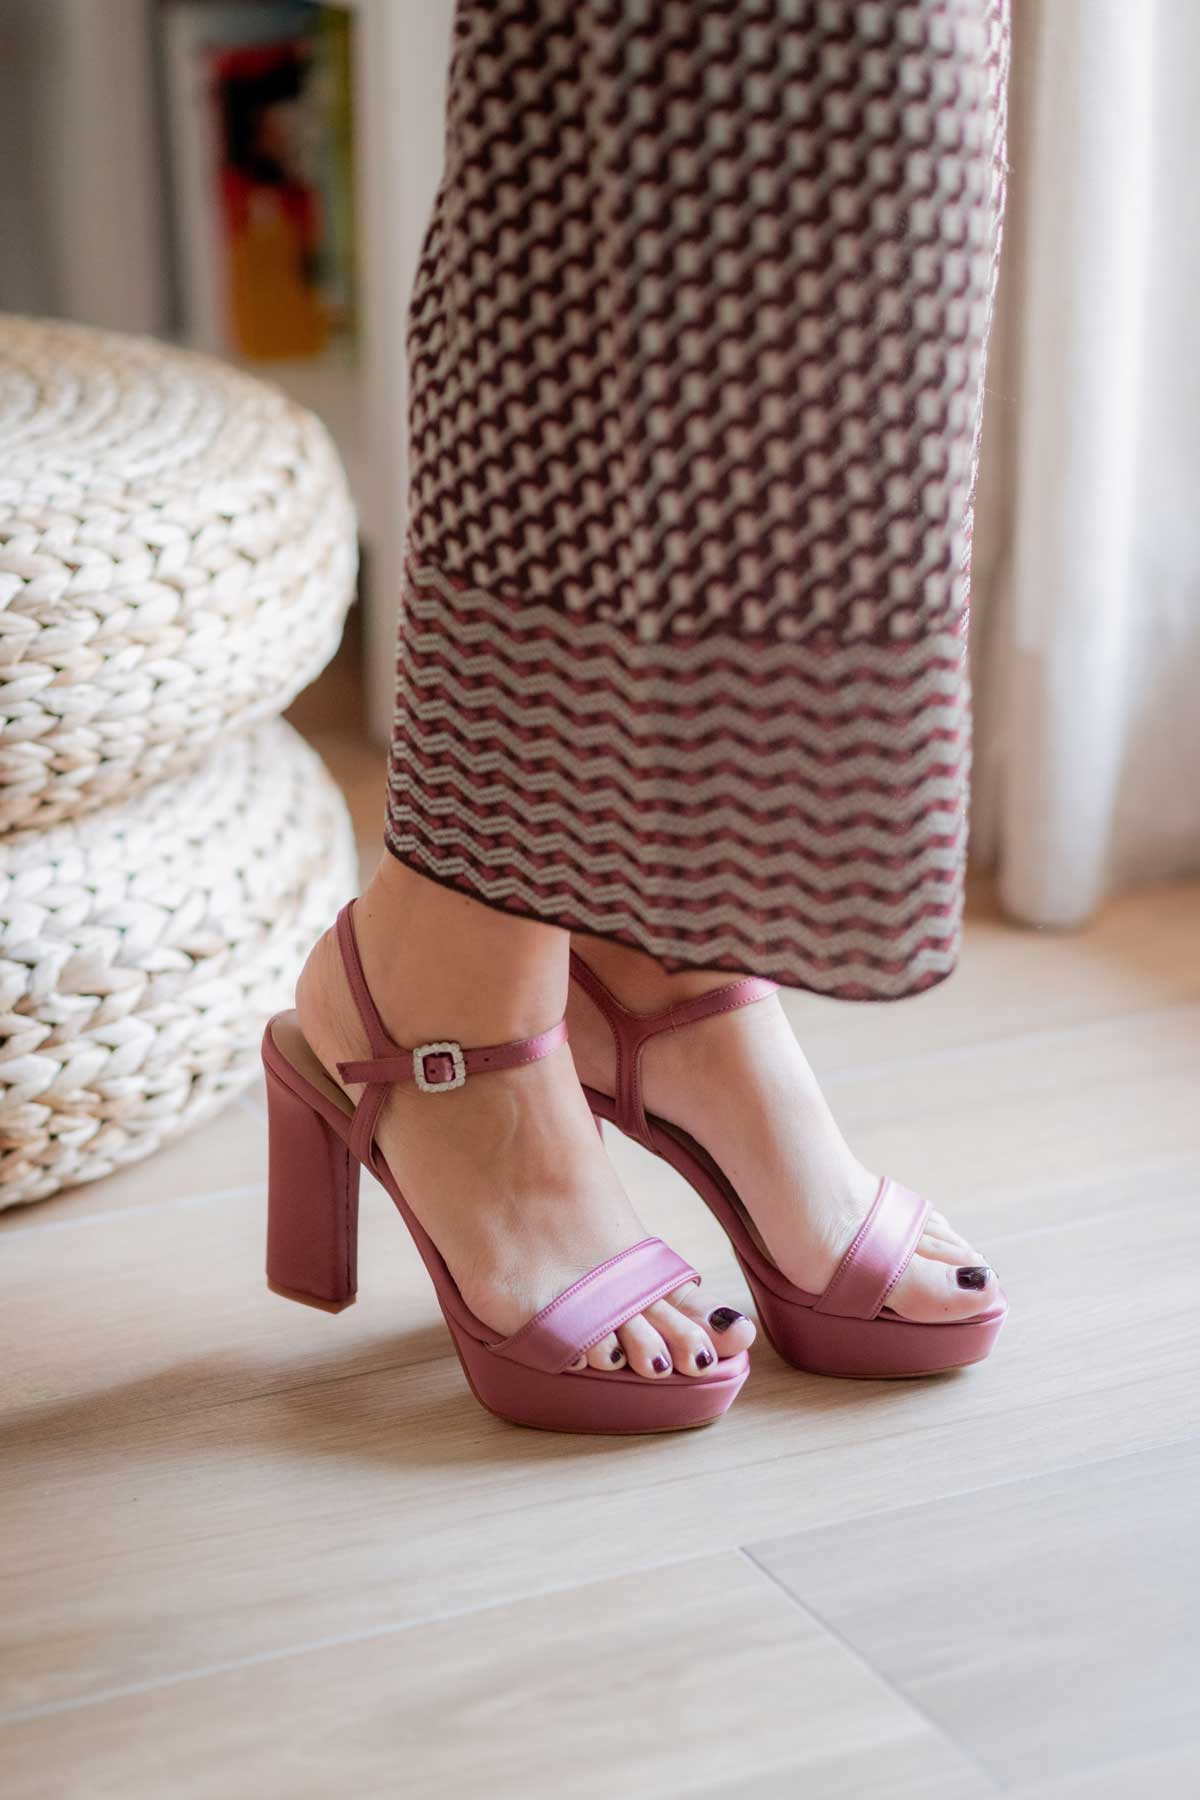 Loreto raso rosa-sandalias-new collection, novia, tacón de 10 cm, terciopelo rosa, zapatos color rosa, zapatos de color rosa-Loovshoes